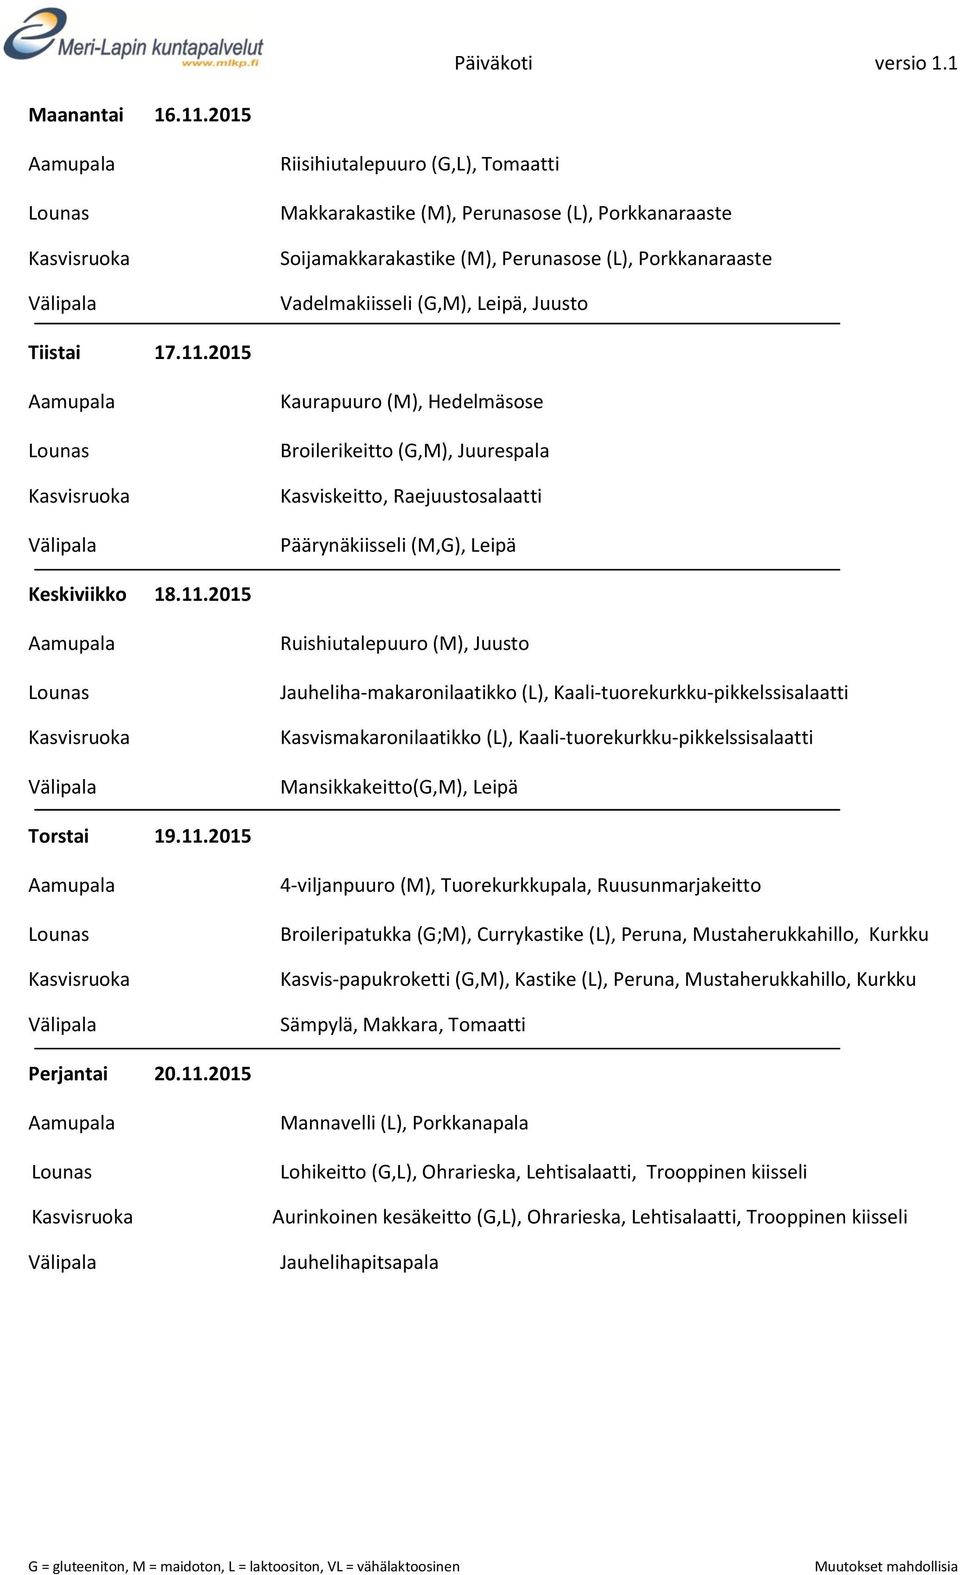 2015 Kaurapuuro (M), Hedelmäsose Broilerikeitto (G,M), Juurespala Kasviskeitto, Raejuustosalaatti Päärynäkiisseli (M,G), Leipä Keskiviikko 18.11.